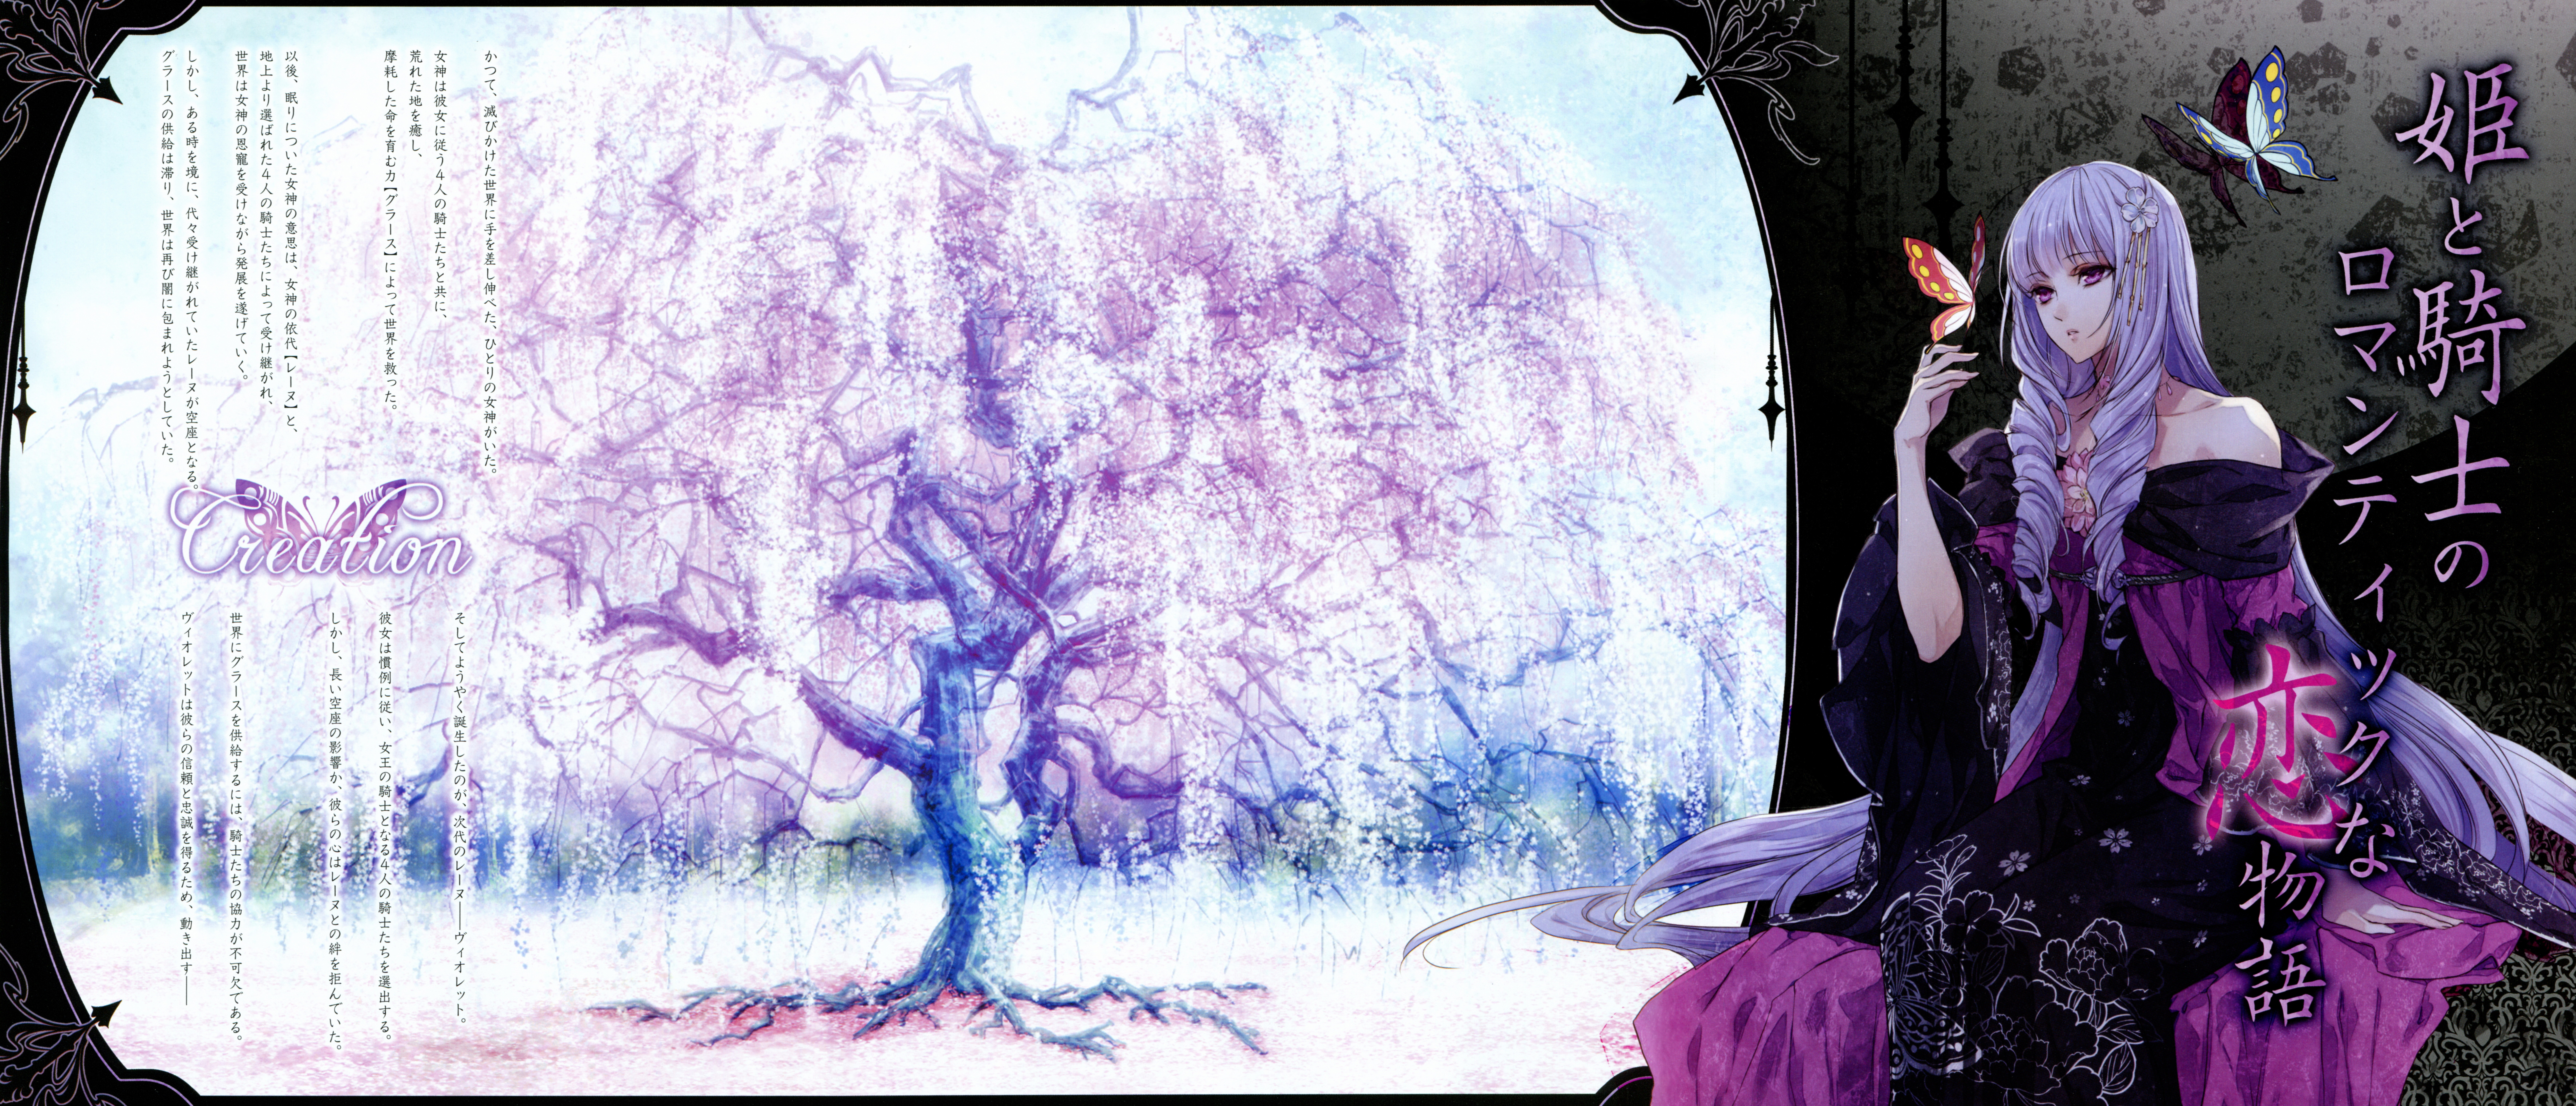 Wallpaper Full HD anime, reine des fleurs